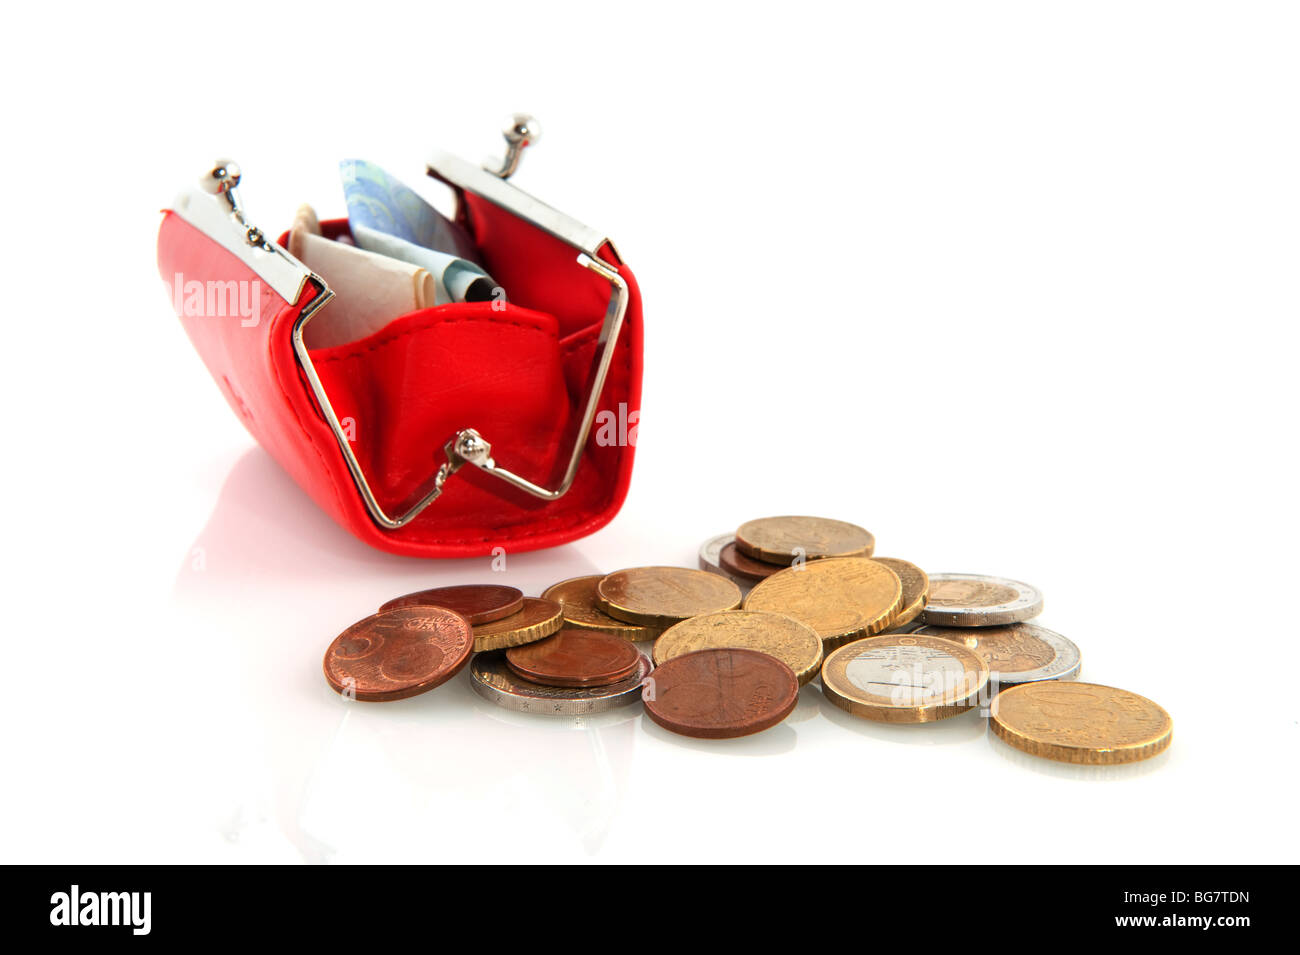 Las monedas y billetes en un monedero rojo Foto de stock